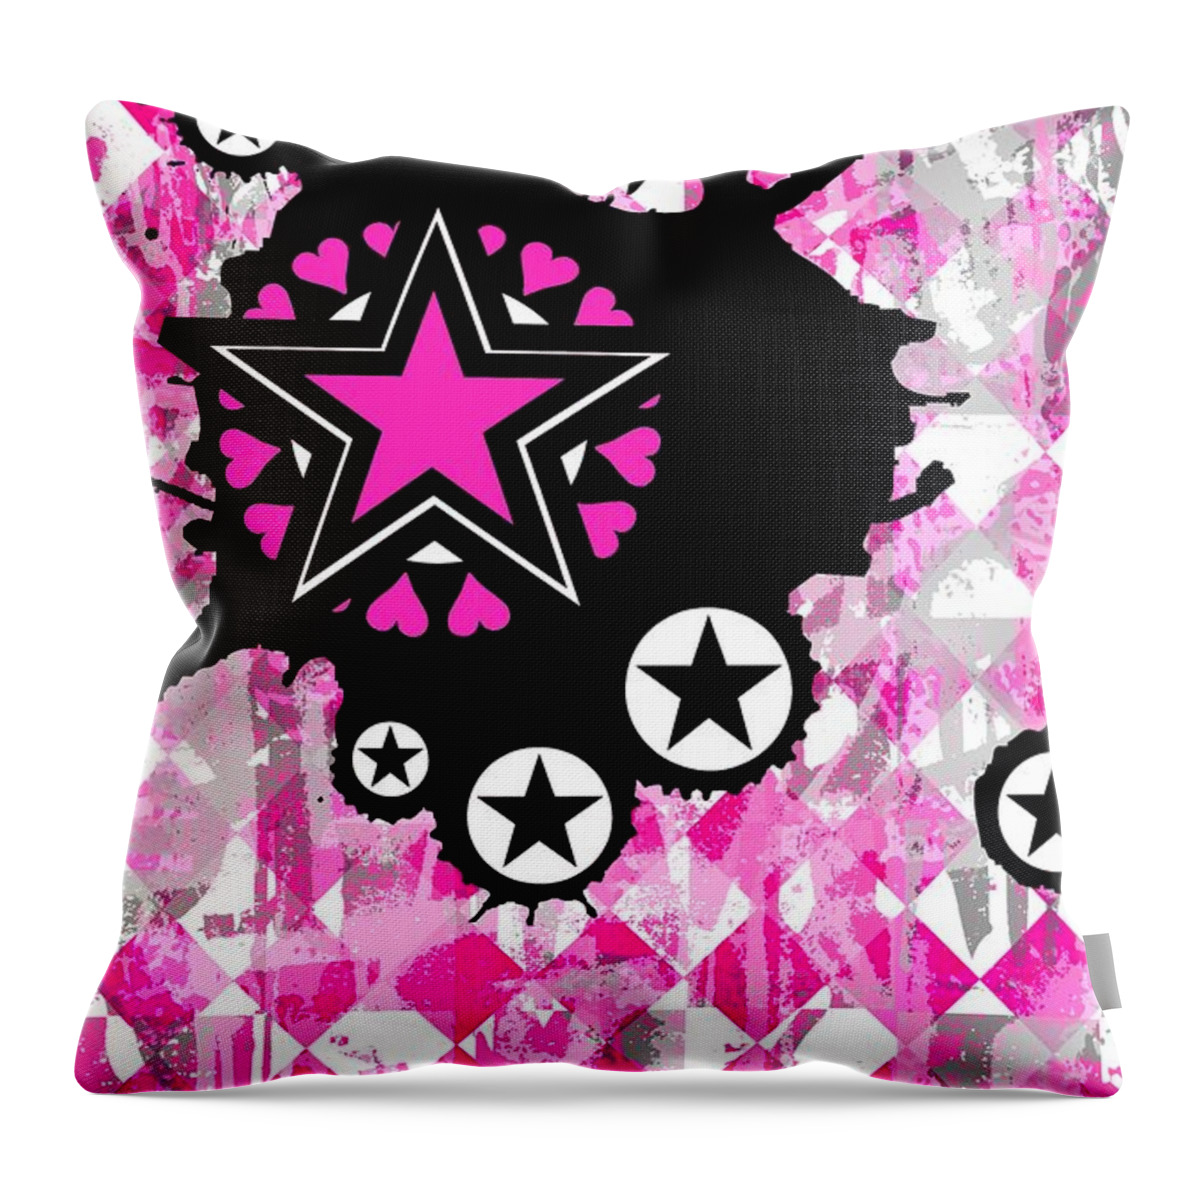 Star Throw Pillow featuring the digital art Pink Star Splatter by Roseanne Jones